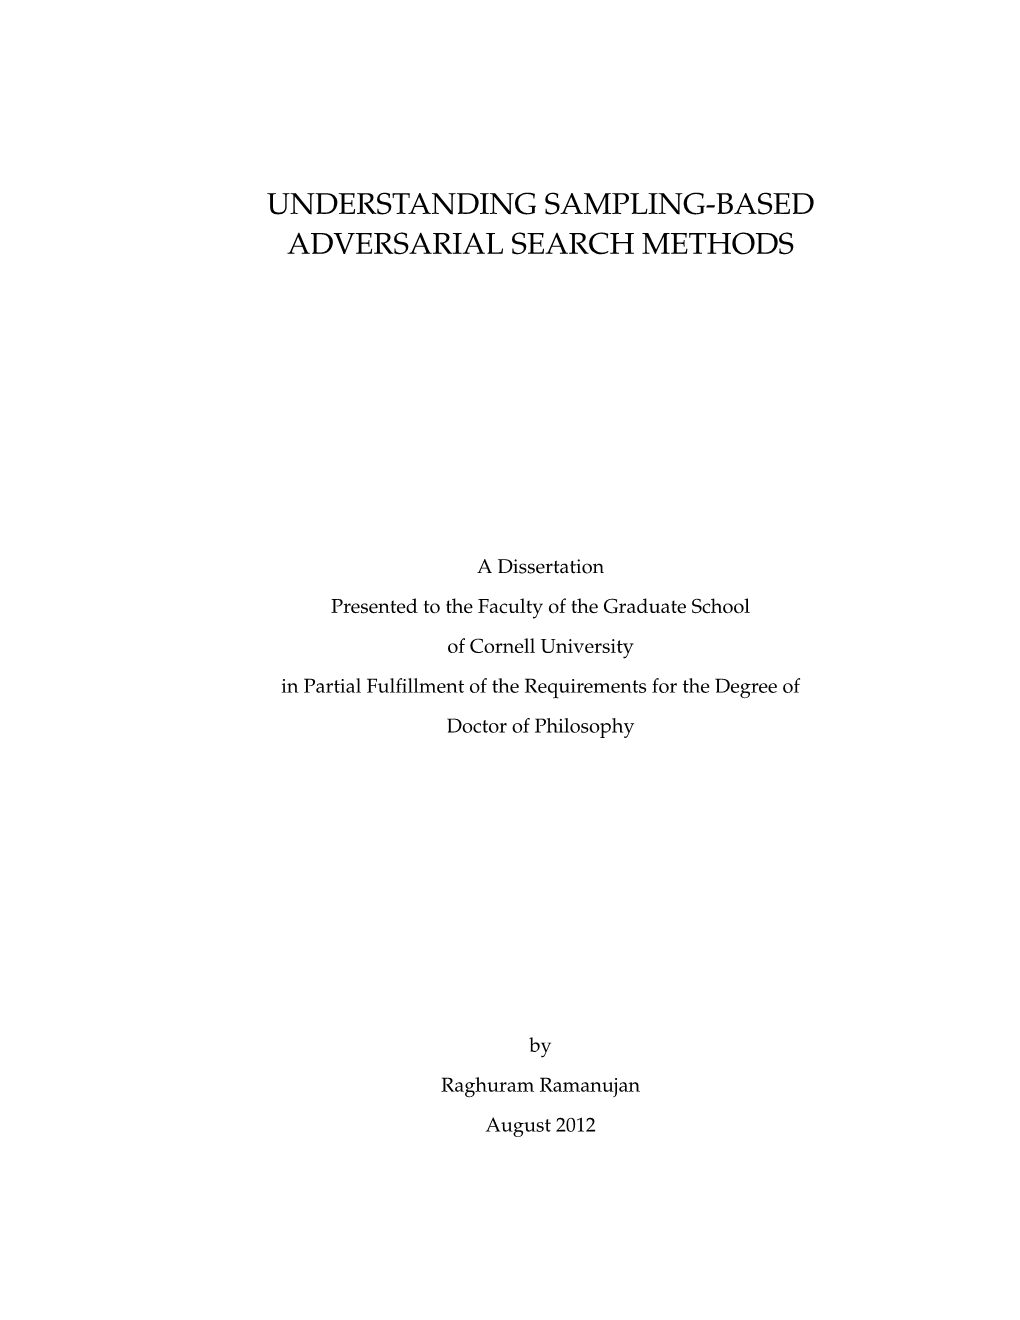 Understanding Sampling-Based Adversarial Search Methods